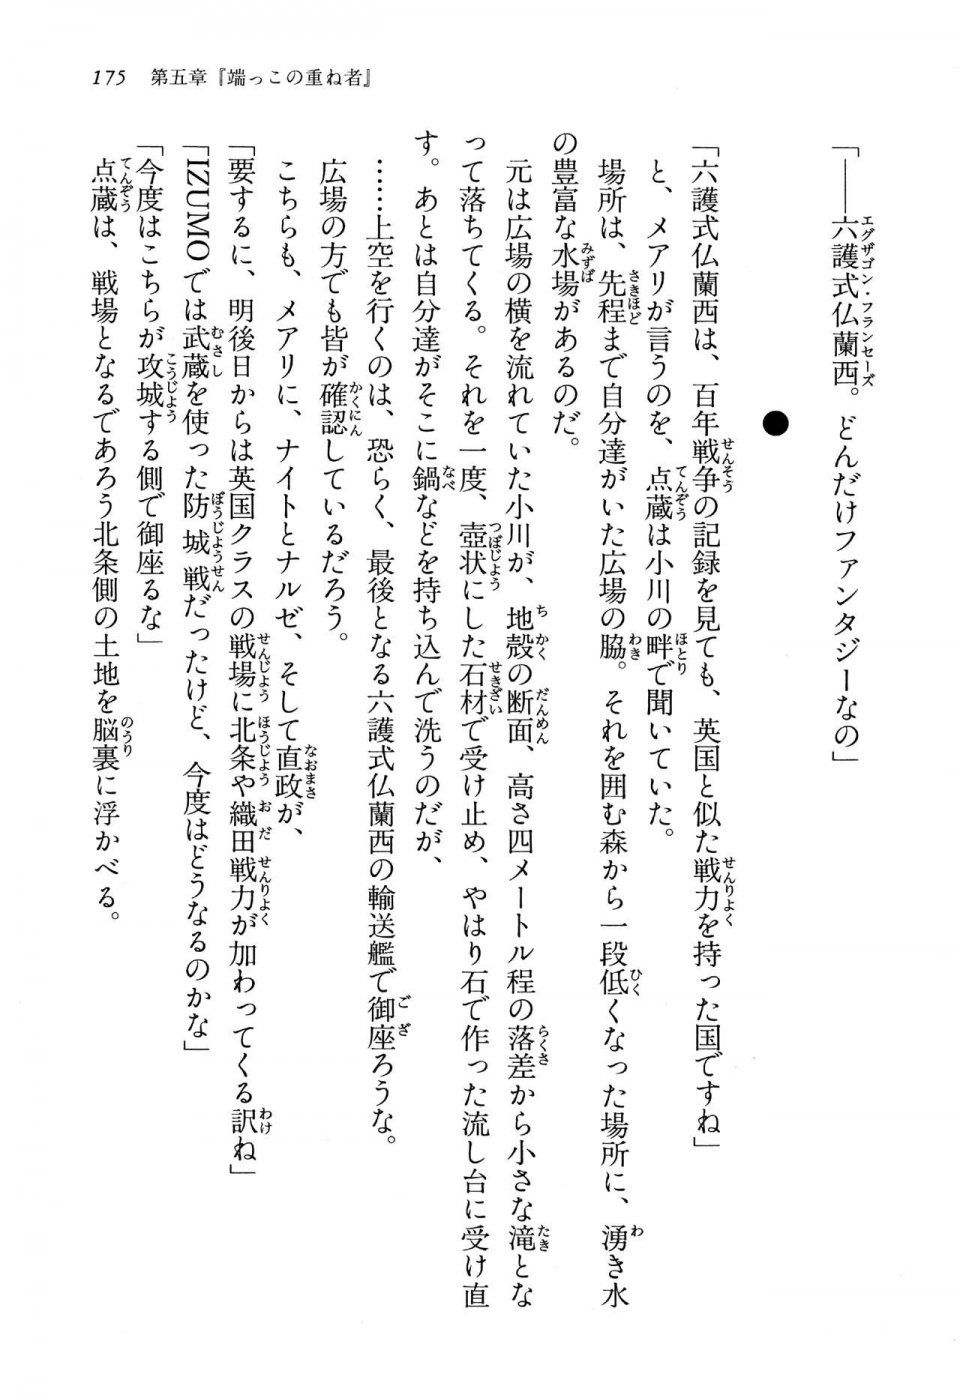 Kyoukai Senjou no Horizon LN Vol 13(6A) - Photo #175